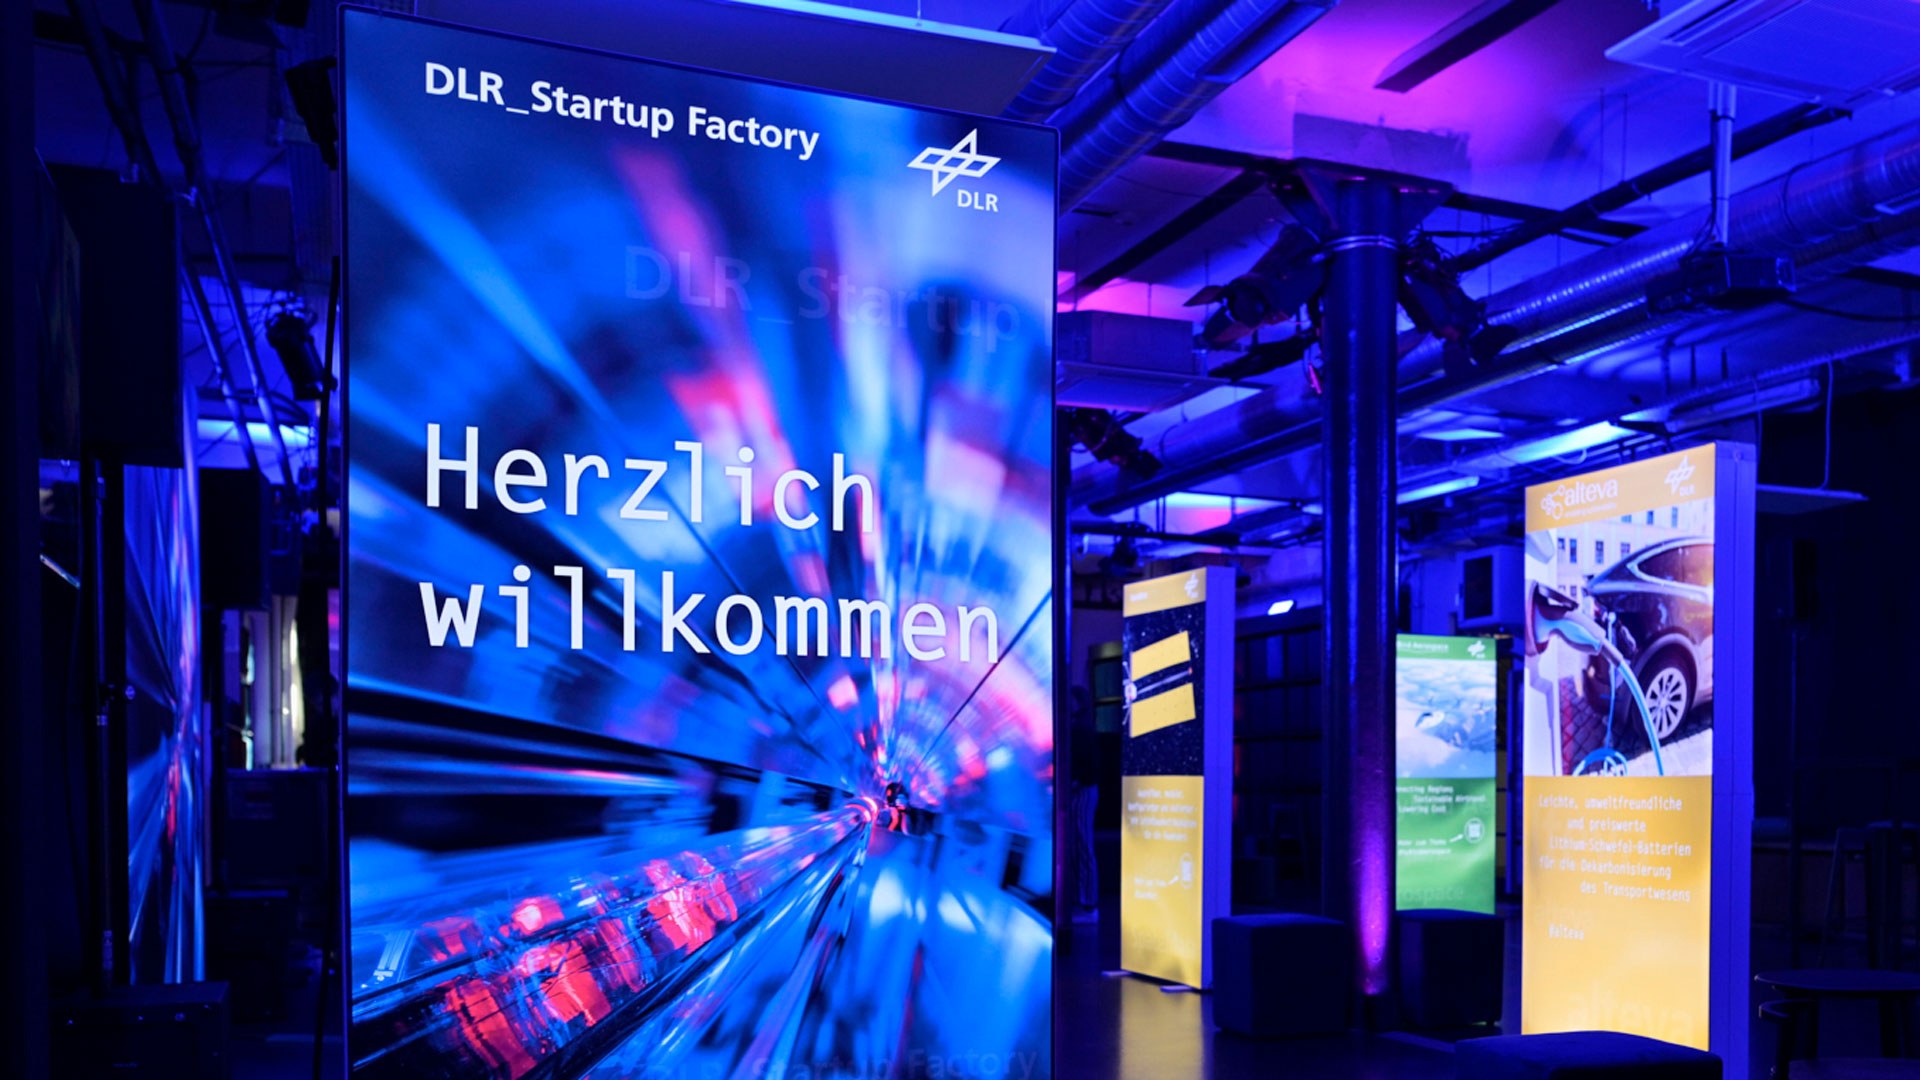 Die DLR_Startup Factory stärkt den Transfer von der Wissenschaft in die Wirtschaft und Gesellschaft von morgen.